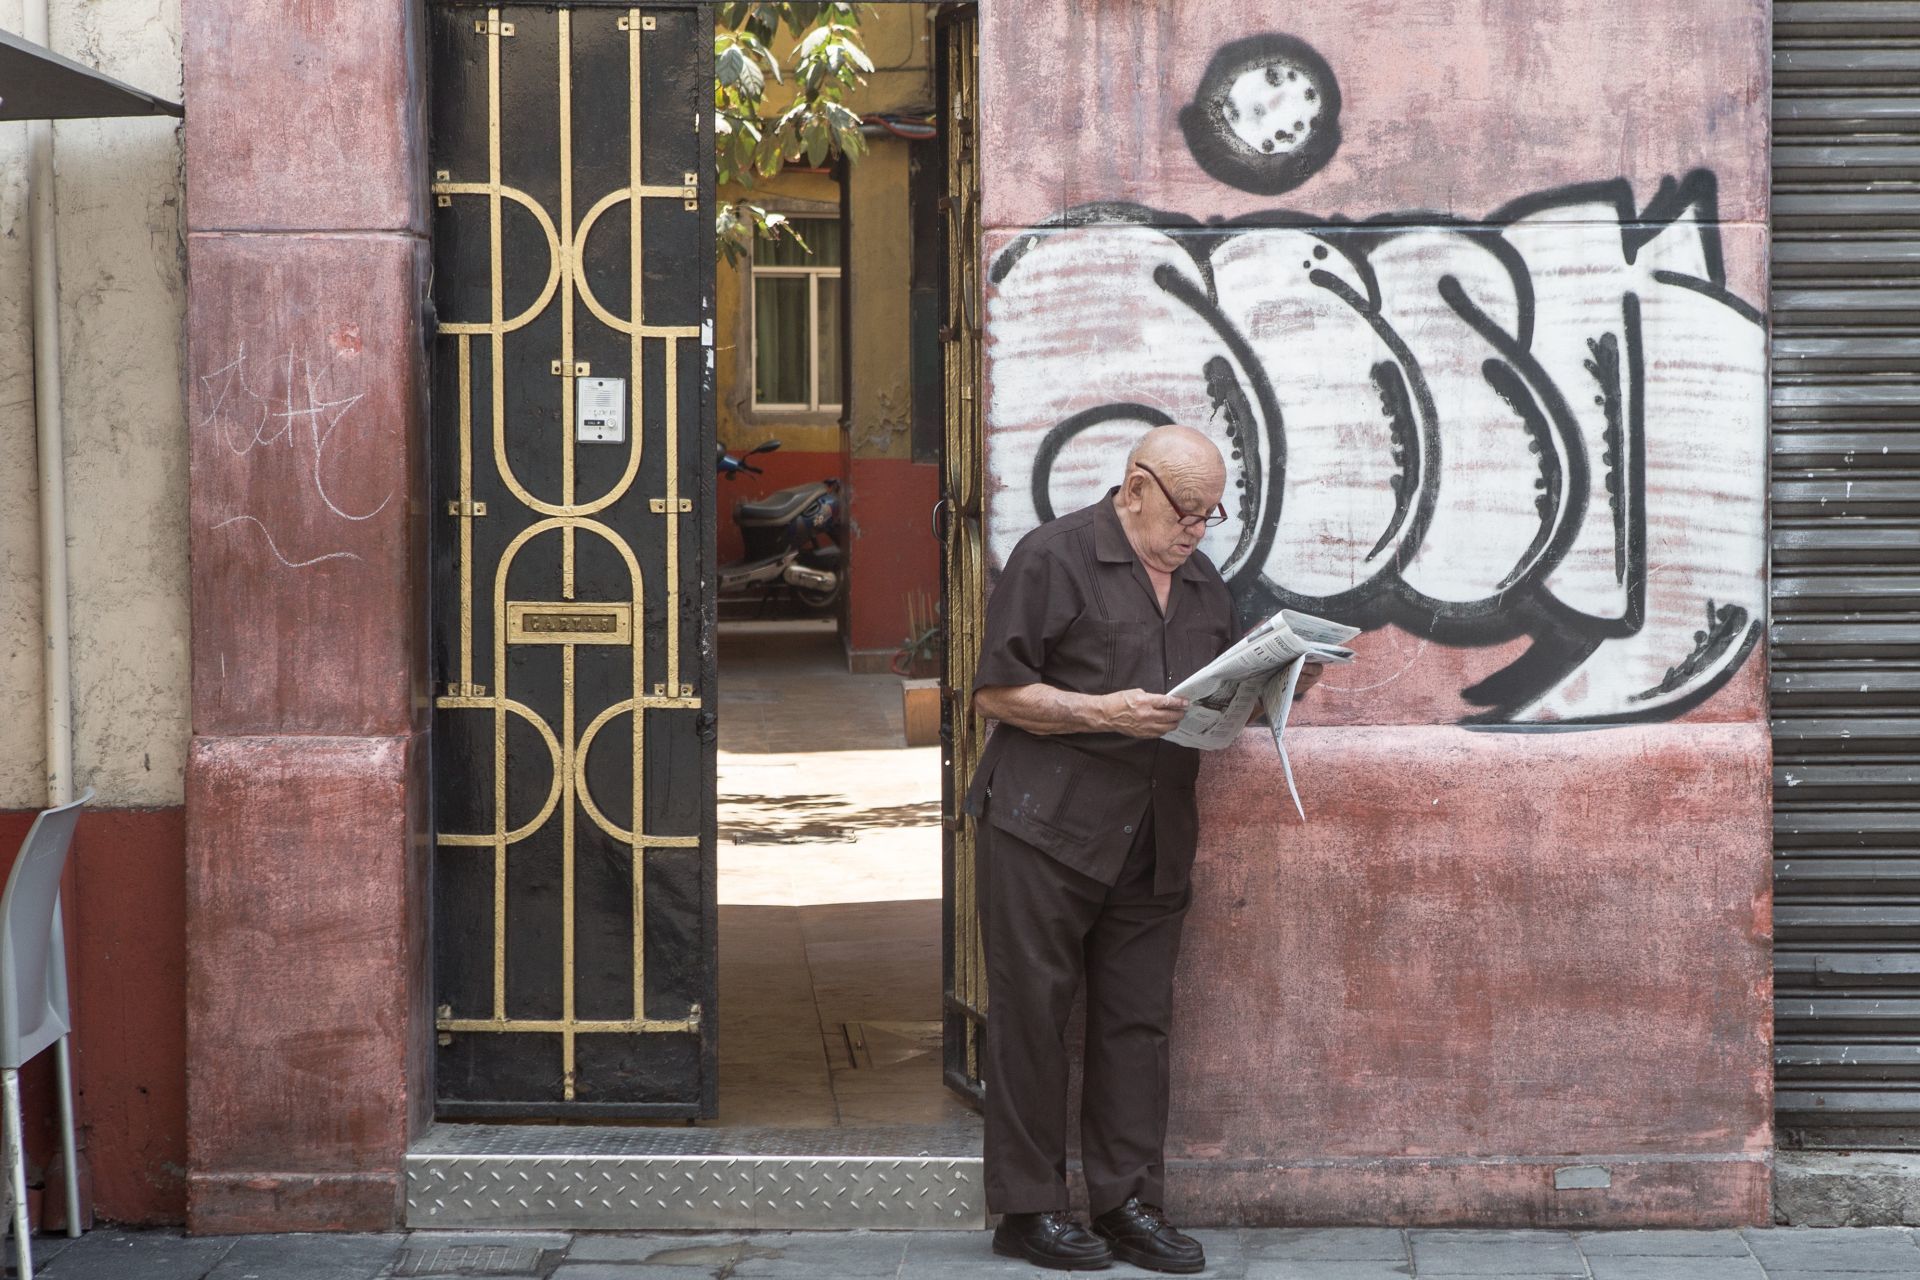 En la imagen un señor de la tercera edad lee un periódico en el portón de una vecindad del Centro Histórico.
Foto: Archivo/Cuartoscuro/TERCERO DÍAZ.